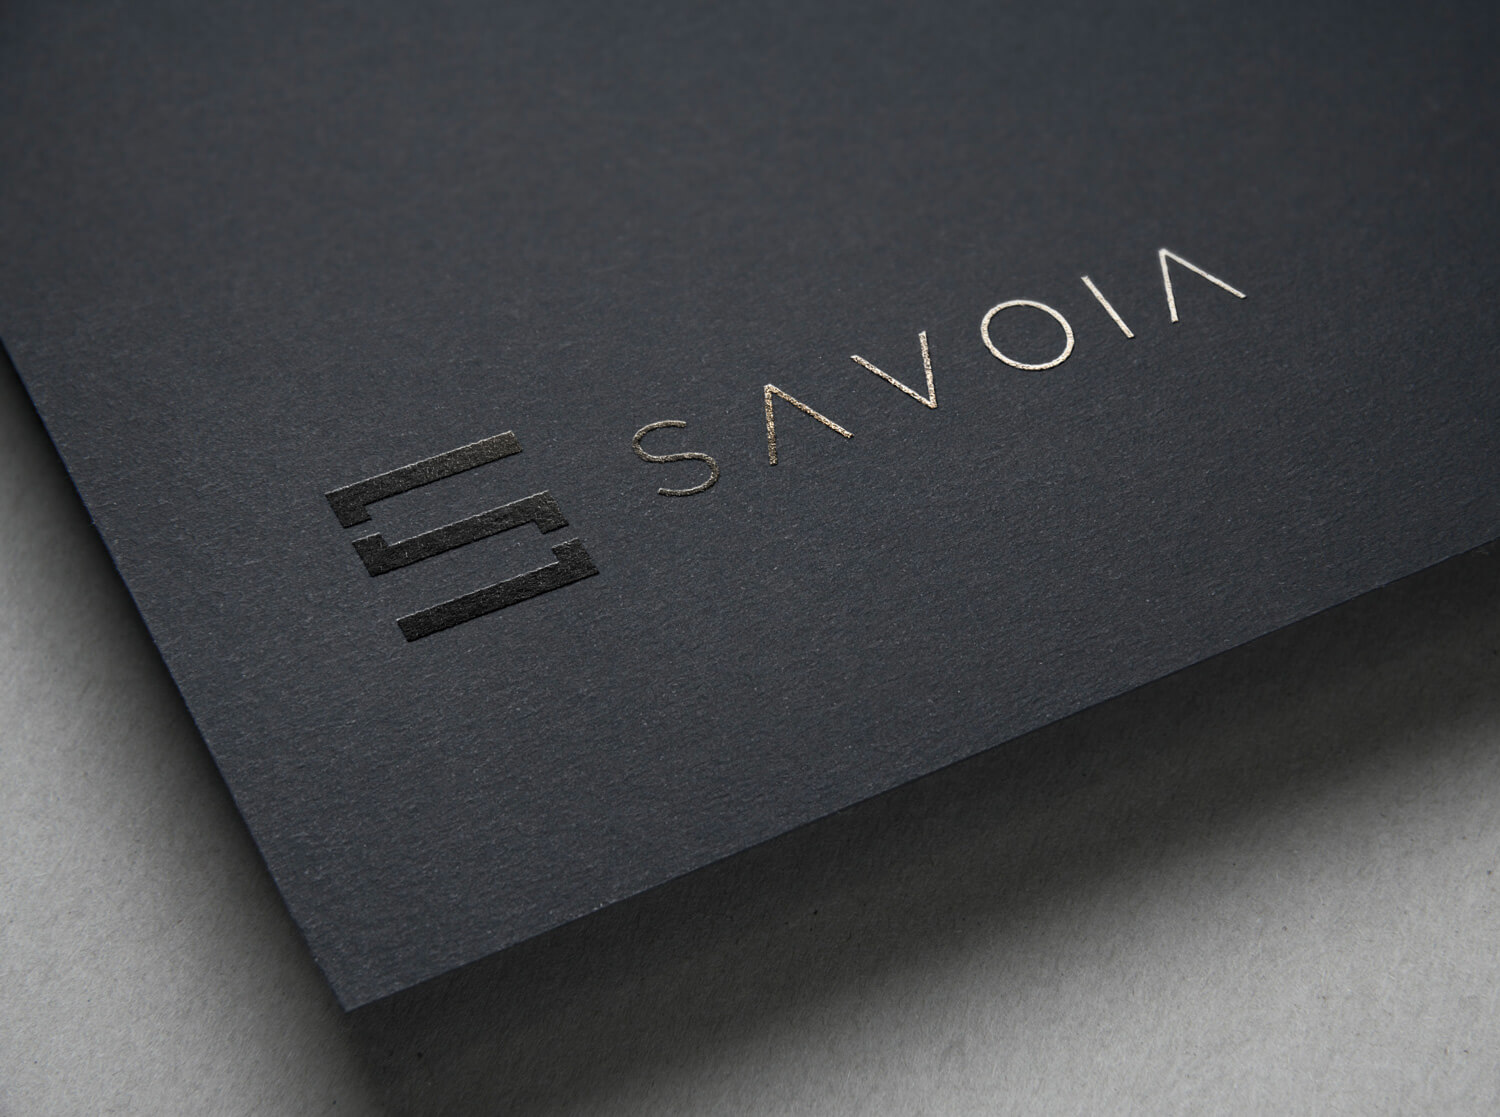 Logo e brand identity di Savoia realizzato da SEBA! grafico di Gravellona Toce nel VCO di marchio lucido su cartelletta nera